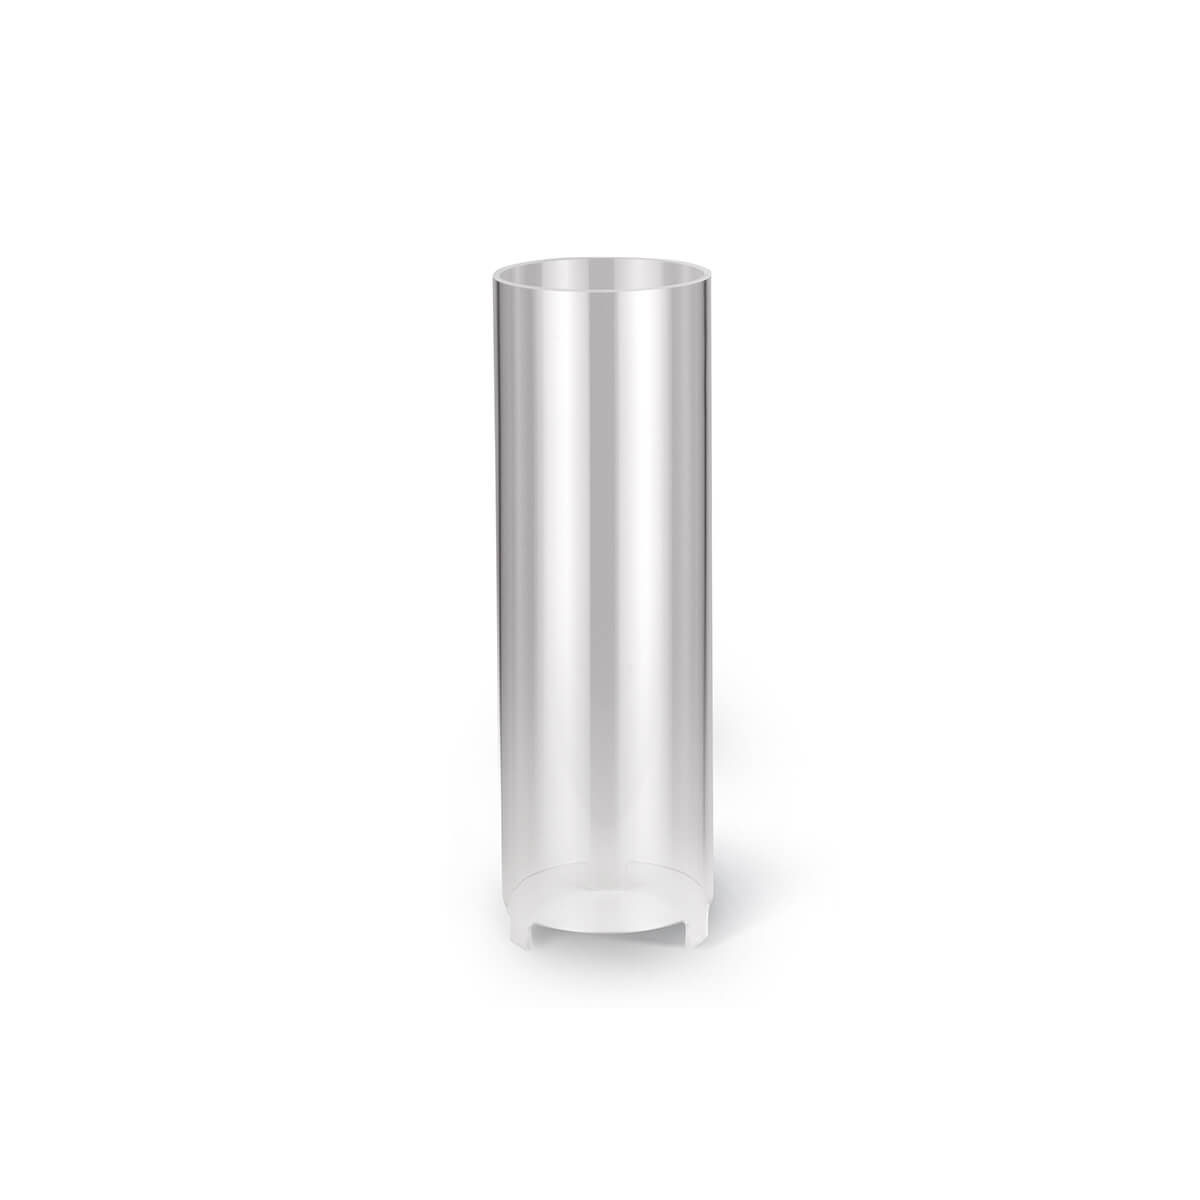 Windschutz für Kerzen – Plexiglas – 210/70 mm